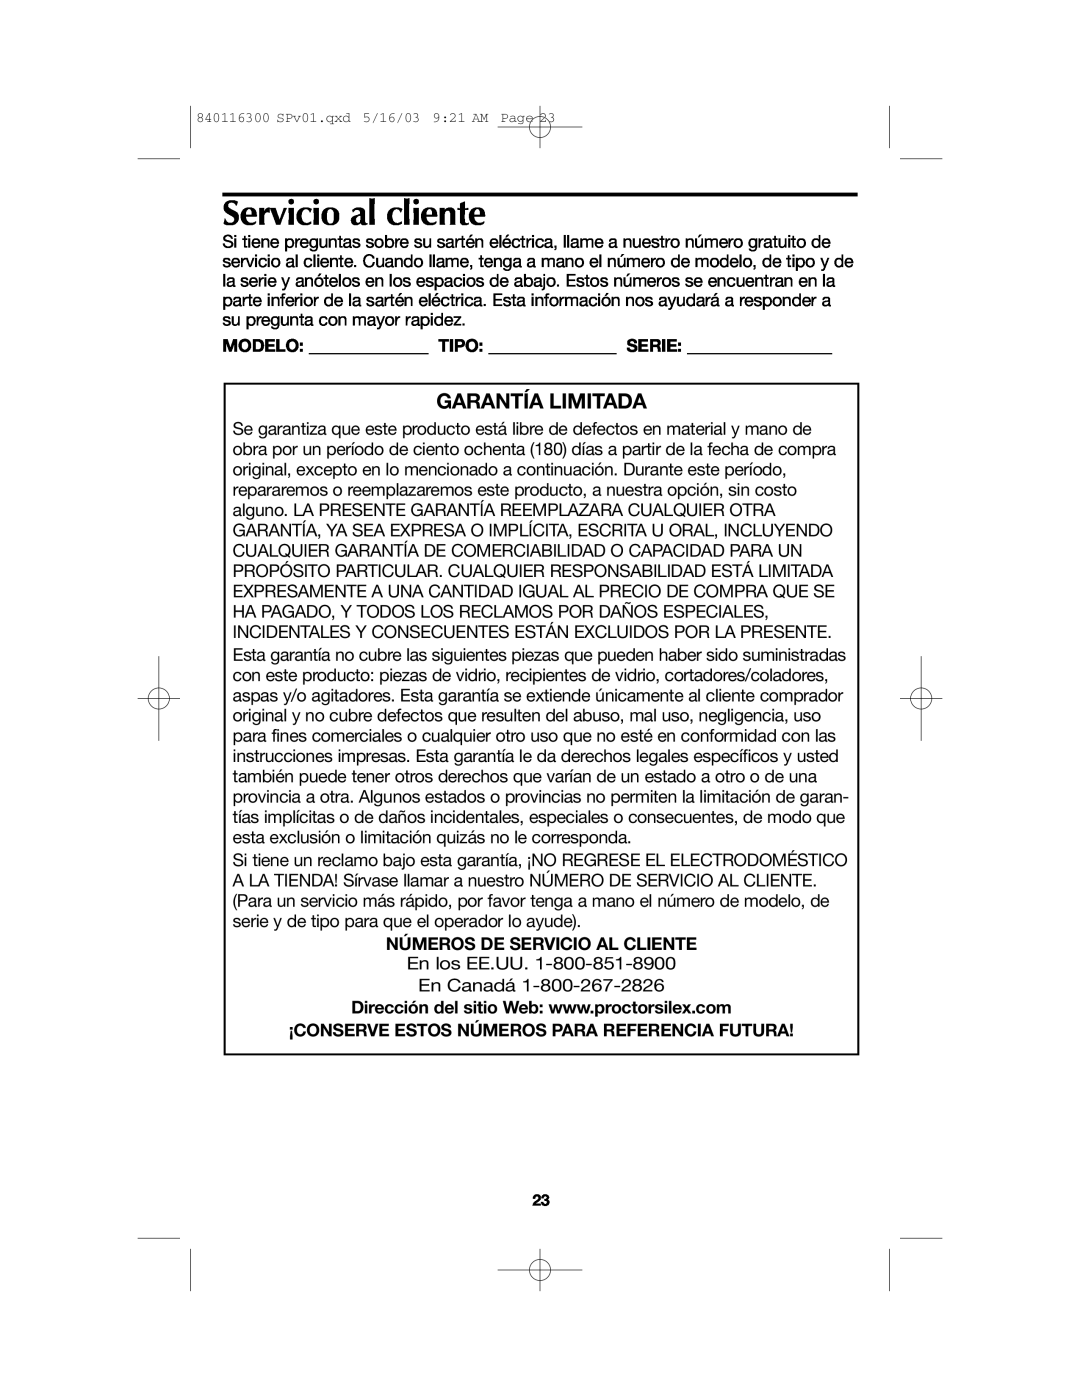 Proctor-Silex 840116300 manual Servicio al cliente, Garantía Limitada, Números De Servicio Al Cliente 